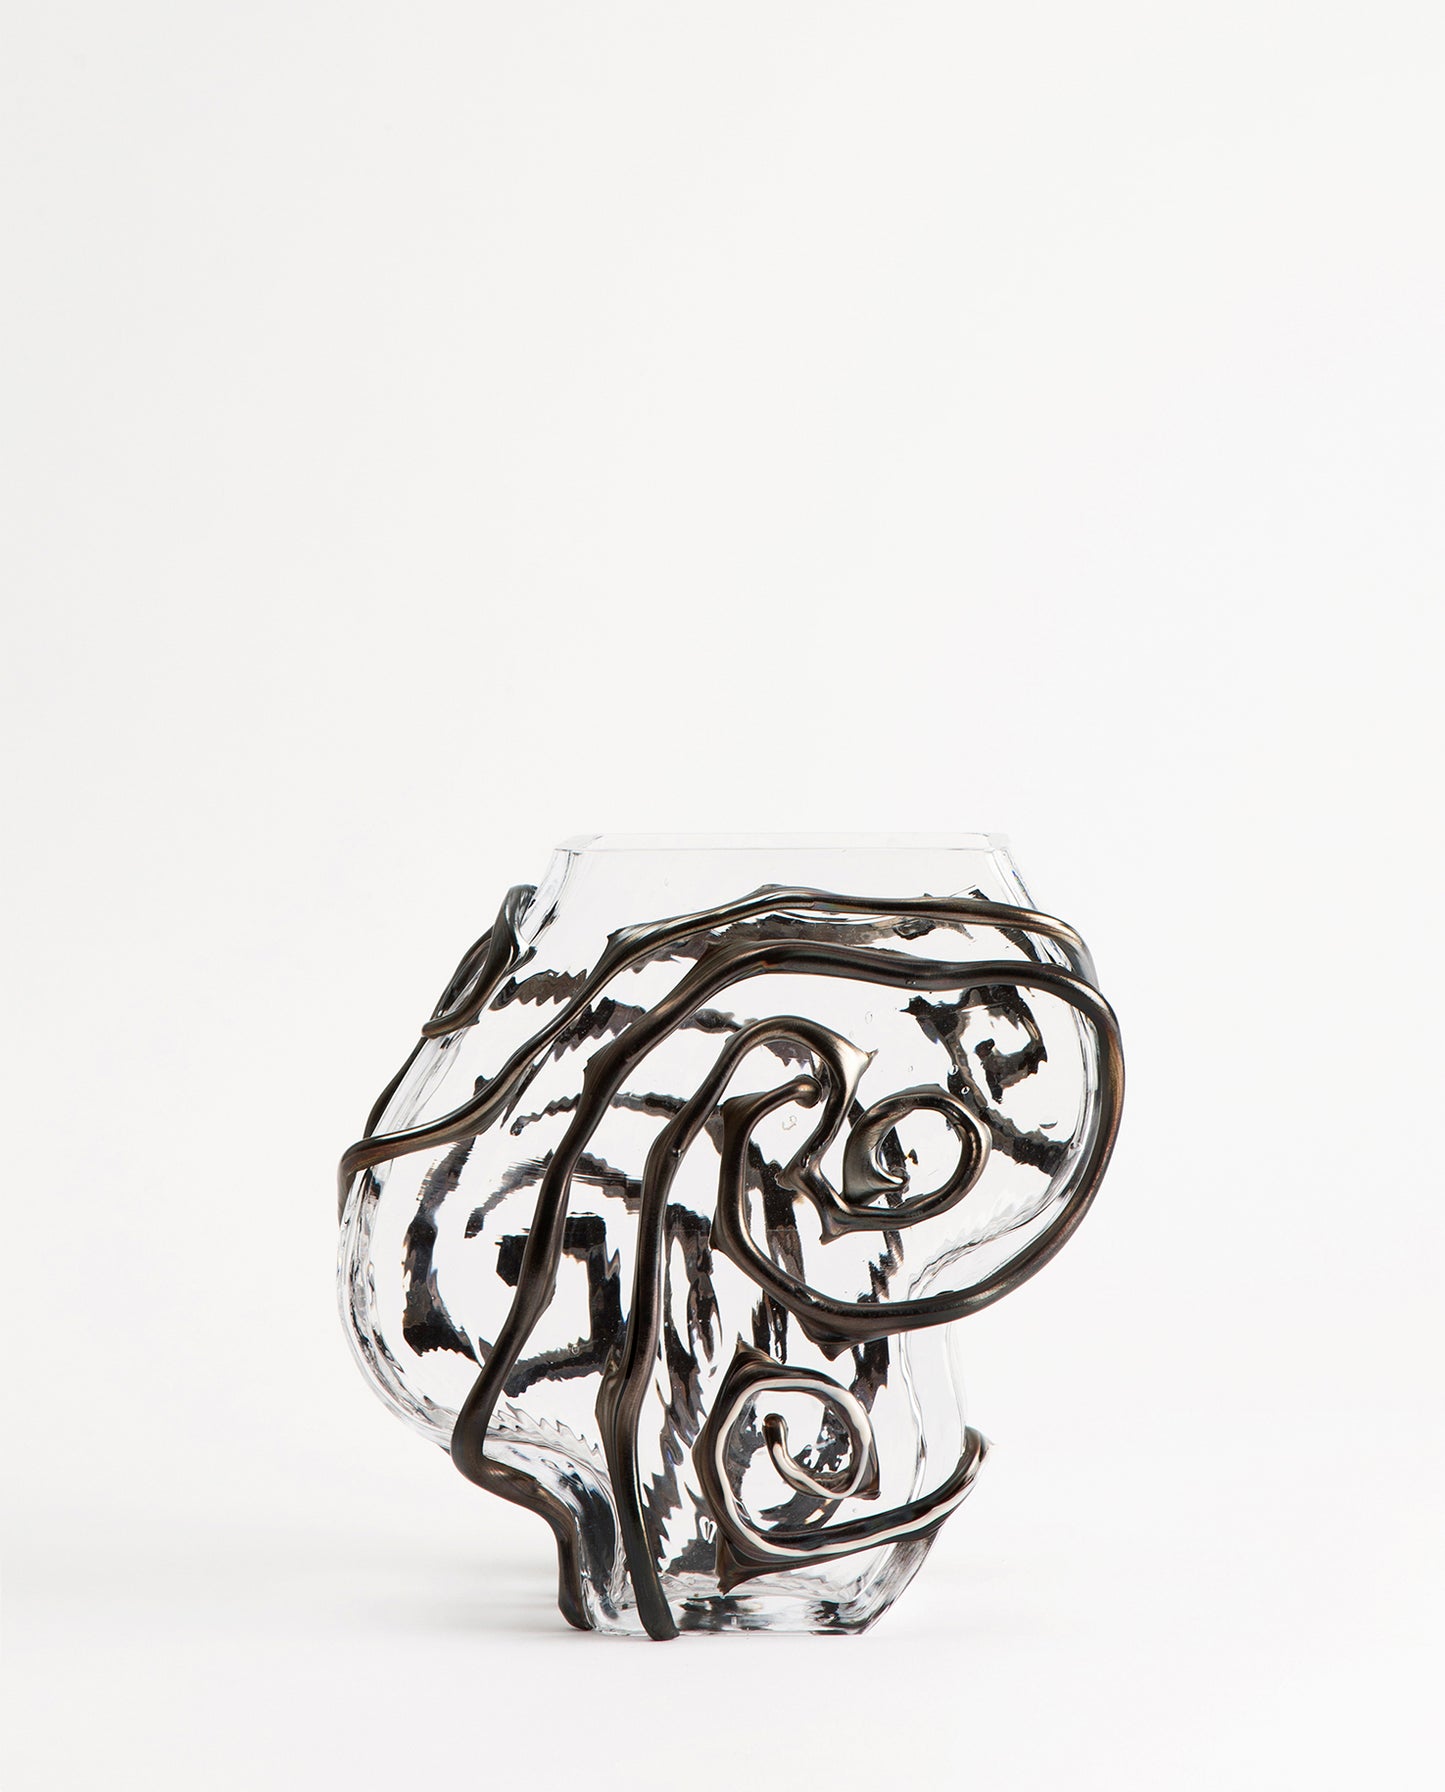 Vase en verre transparent avec des détails noirs, design, dans un style baroque. Vase par Silje Lindrup.